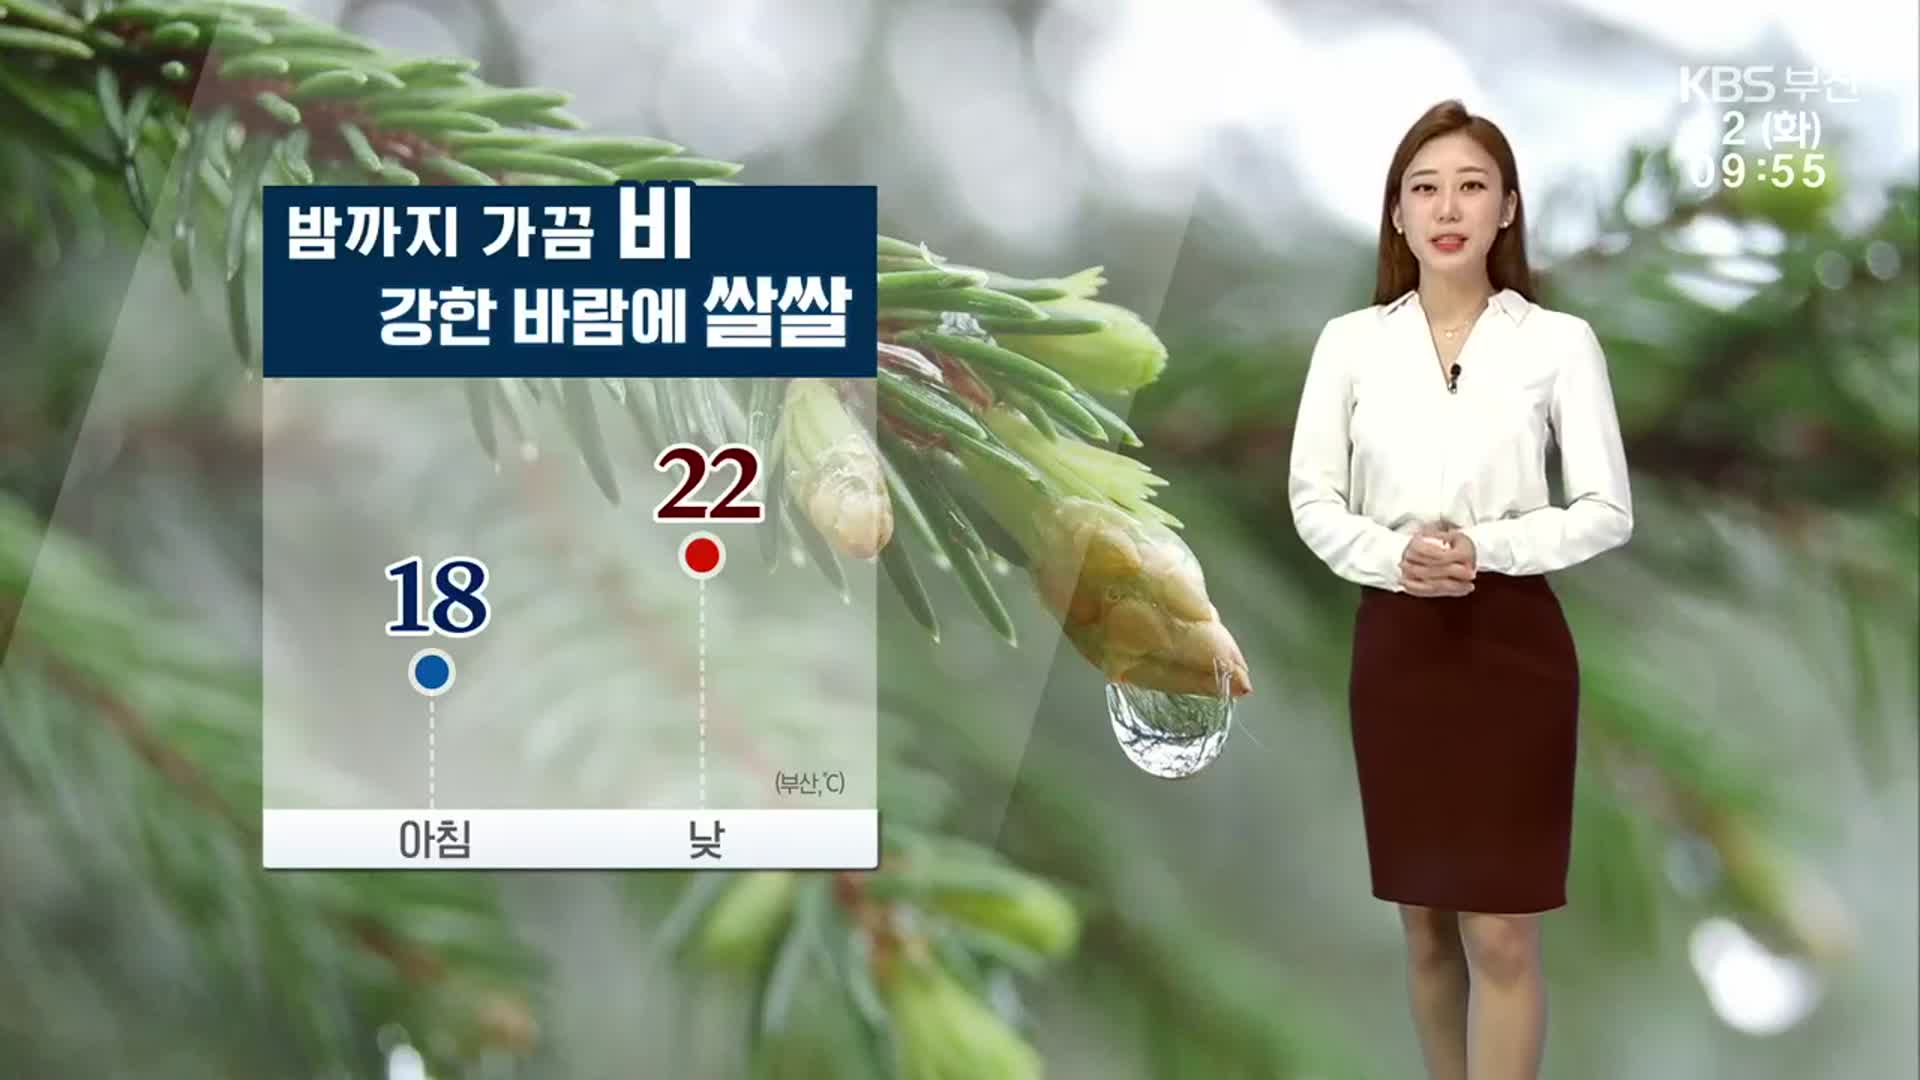 [날씨] 부산 밤까지 가끔 비, 강한 바람에 쌀쌀…낮 최고 22도